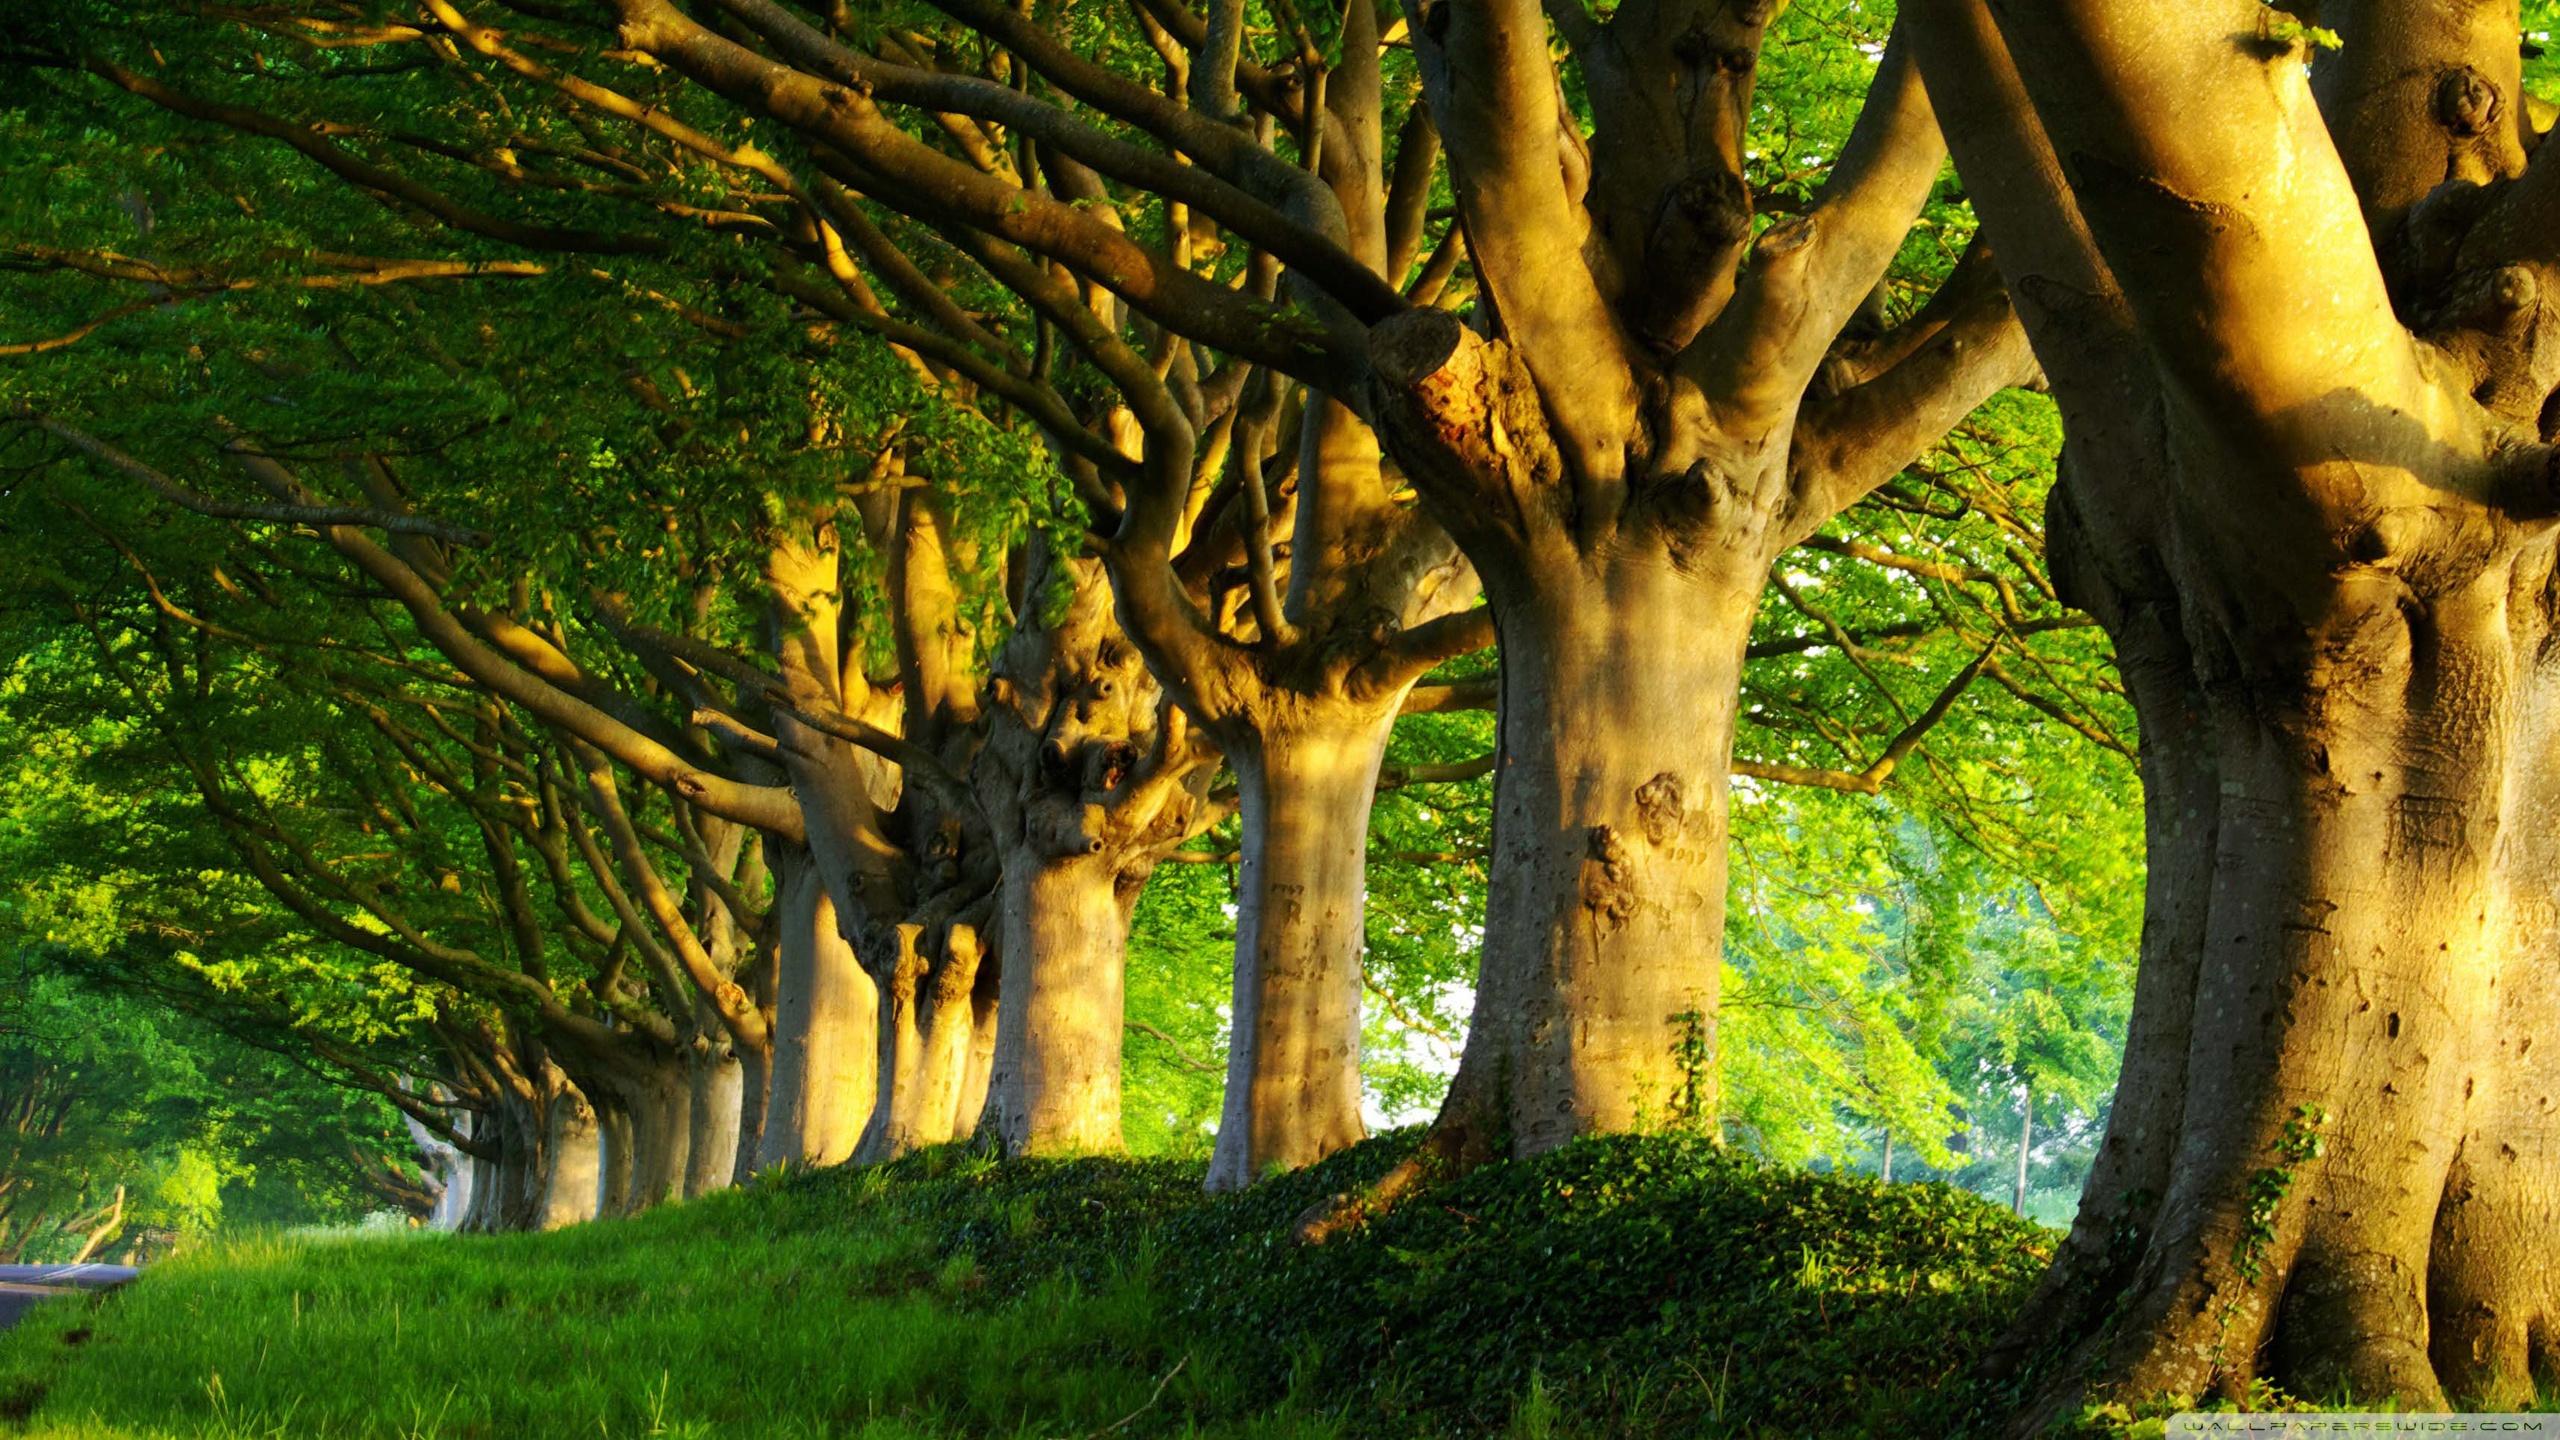 Cùng chiêm ngưỡng những cây mùa hè lấp lánh và rực rỡ trong ánh nắng mặt trời. Những chiếc lá xoay xoắn nhẹ nhàng trong gió, tạo nên một dải màu xanh mát mắt. Một hình ảnh đầy sức sống và hy vọng, sẽ giúp bạn cảm thấy được sự tươi mới và năng động.